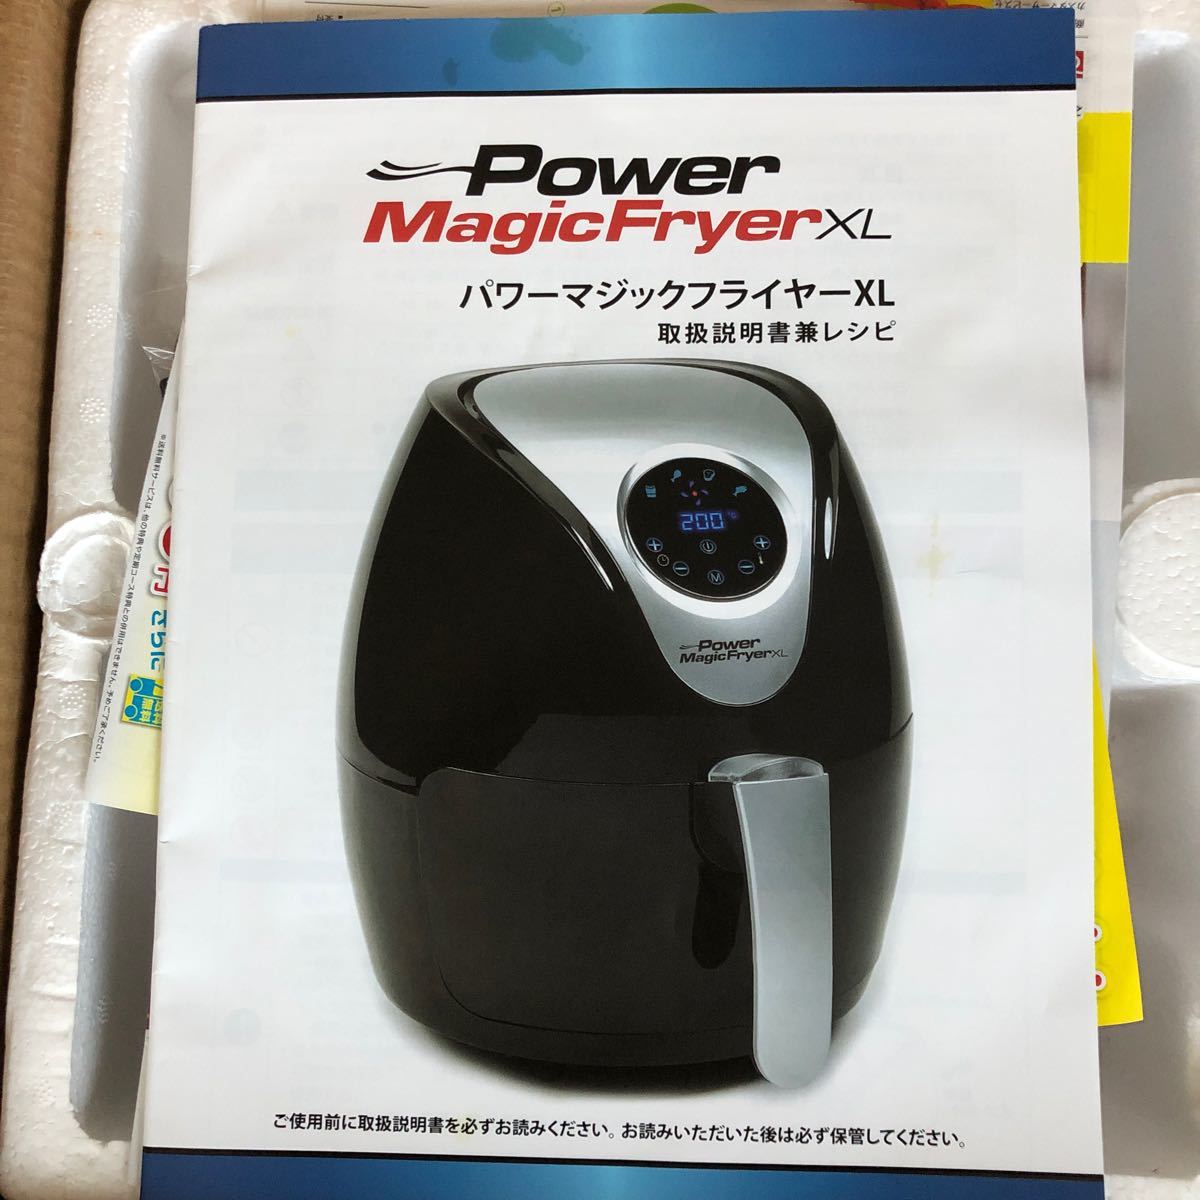 パワーマジックフライヤーXL POWER Magic 調理家電 電気フライヤー ノンフライヤー テレビショッピング